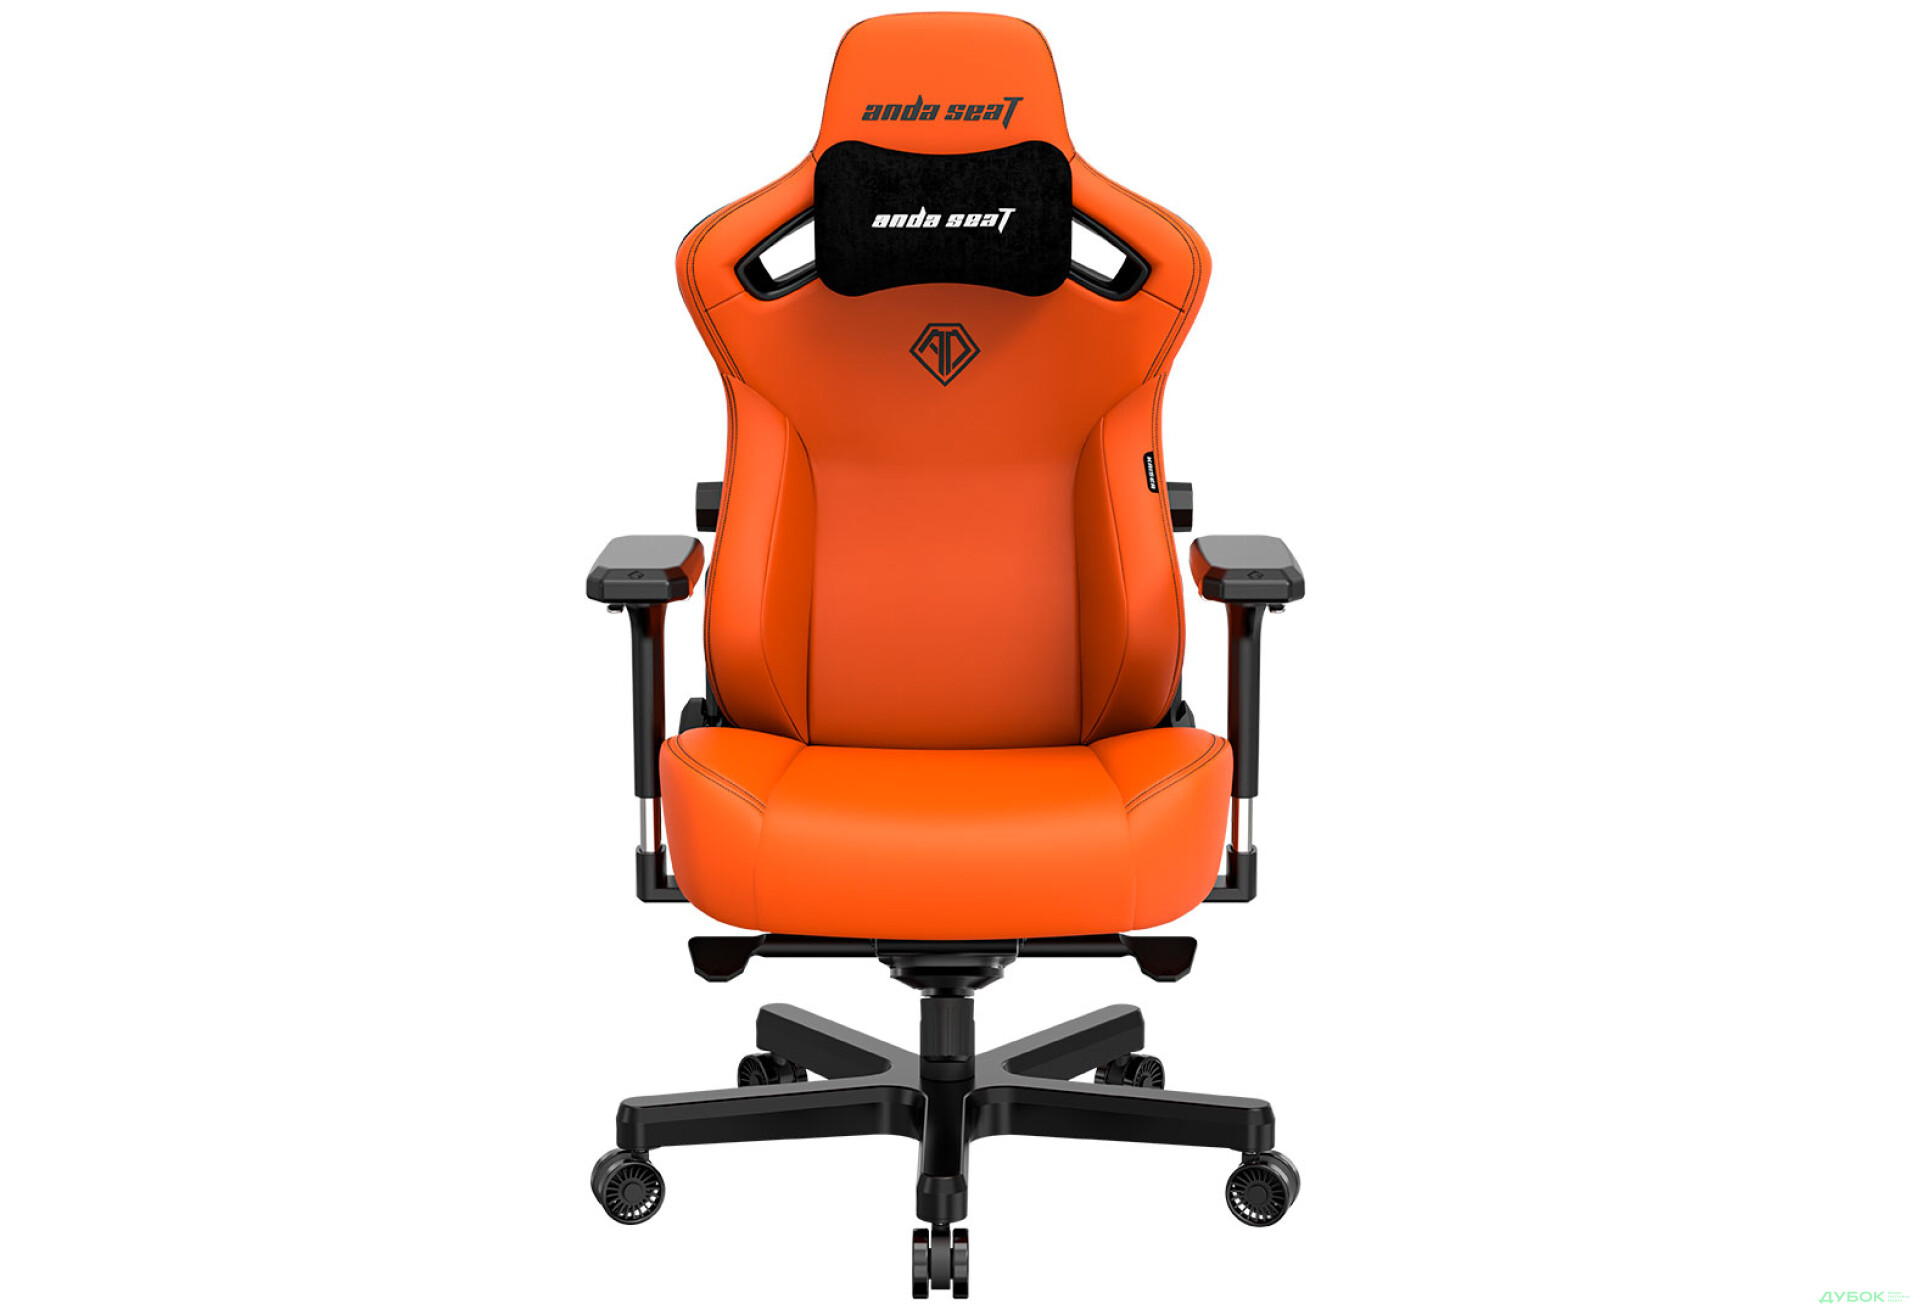 Фото 1 - Компьютерное кресло Anda Seat Kaiser 3 72x57x136 см игровое, оранжевое